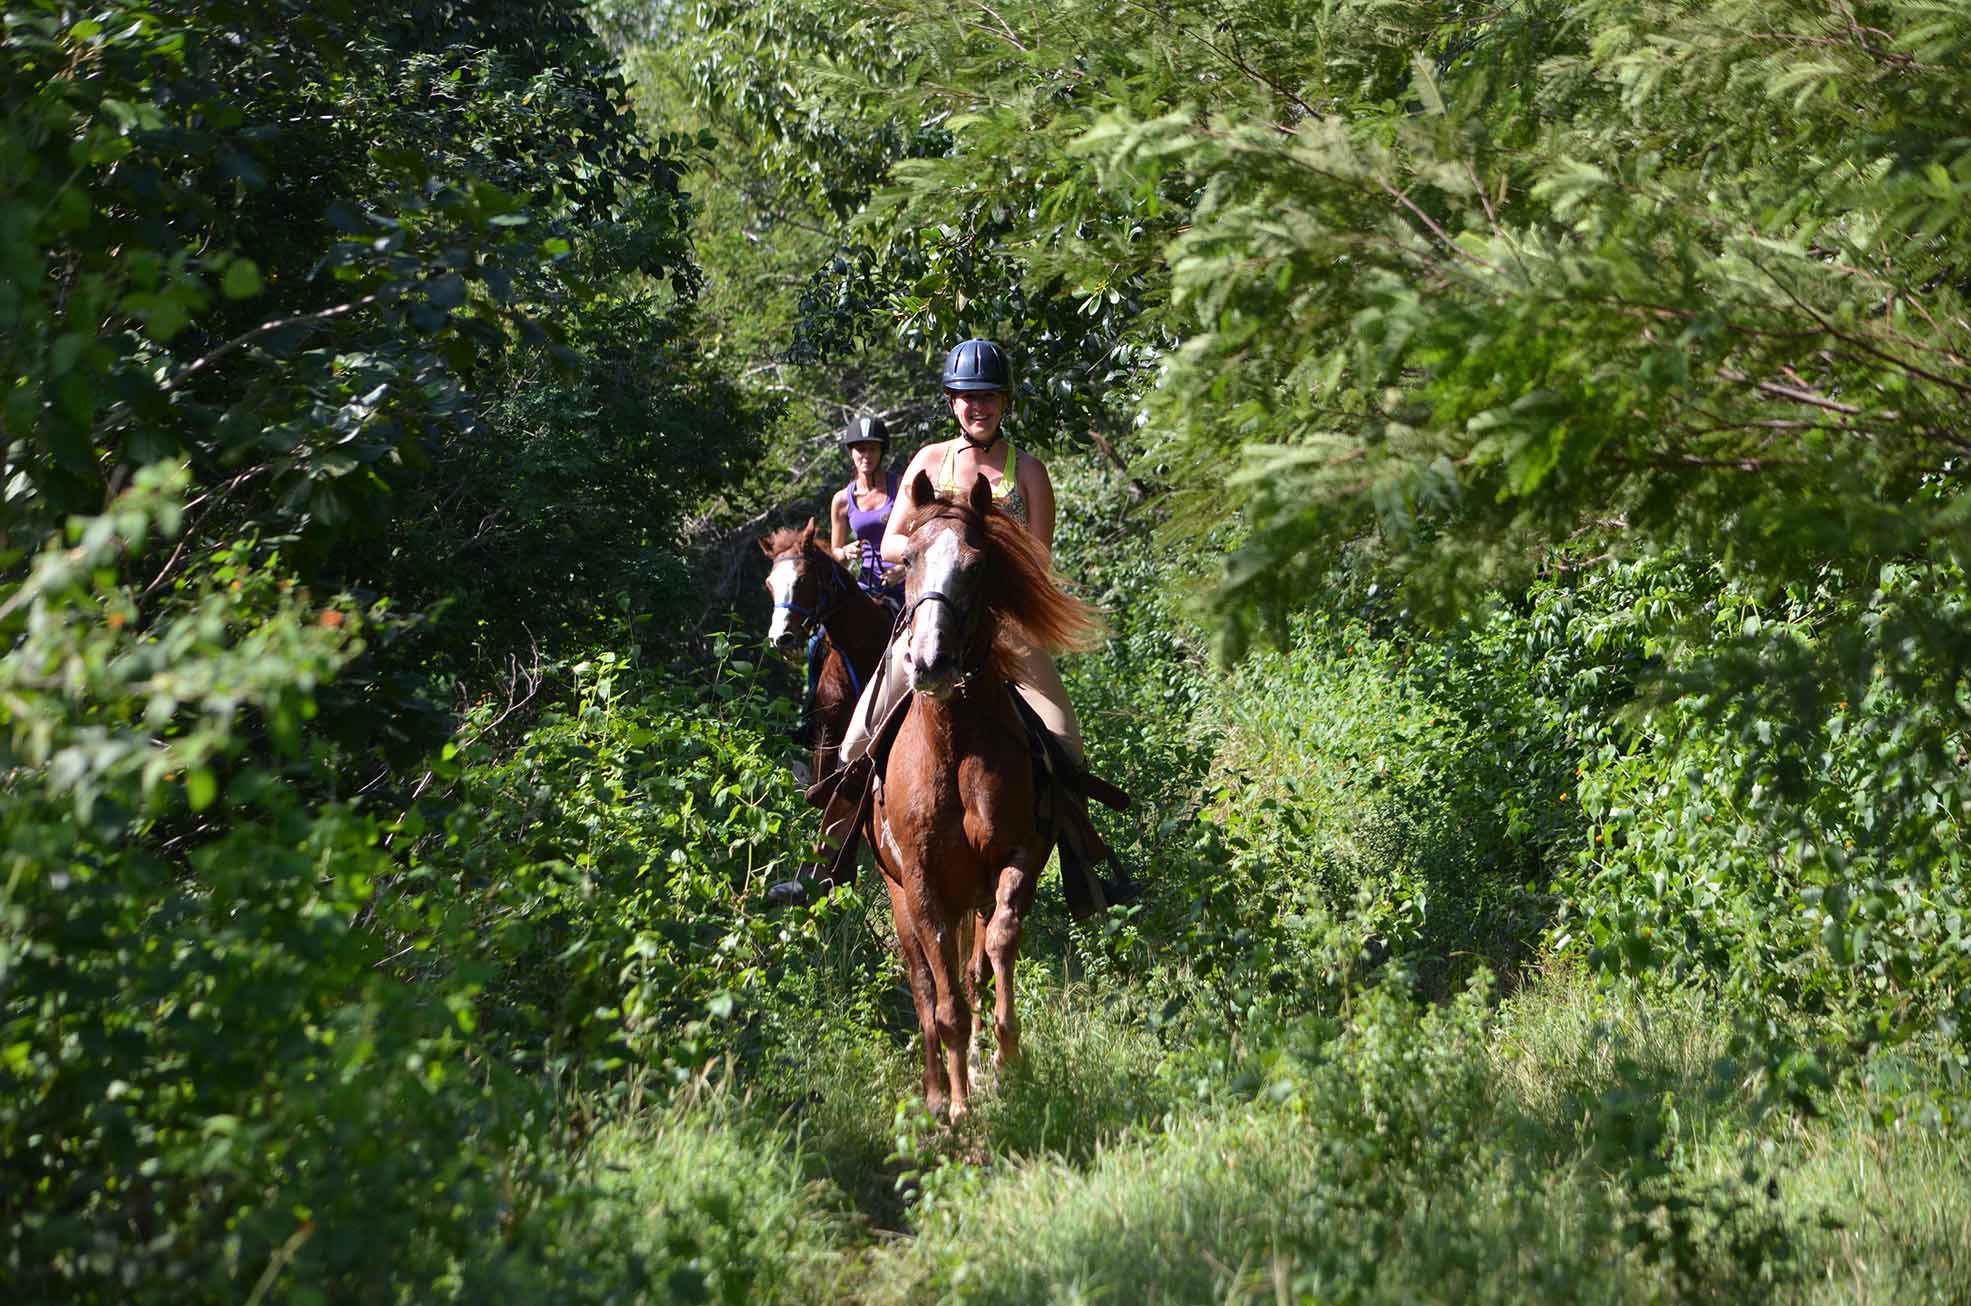 Tulum. Exploring cenotes on horseback through the Mayan jungle - Adrenaline